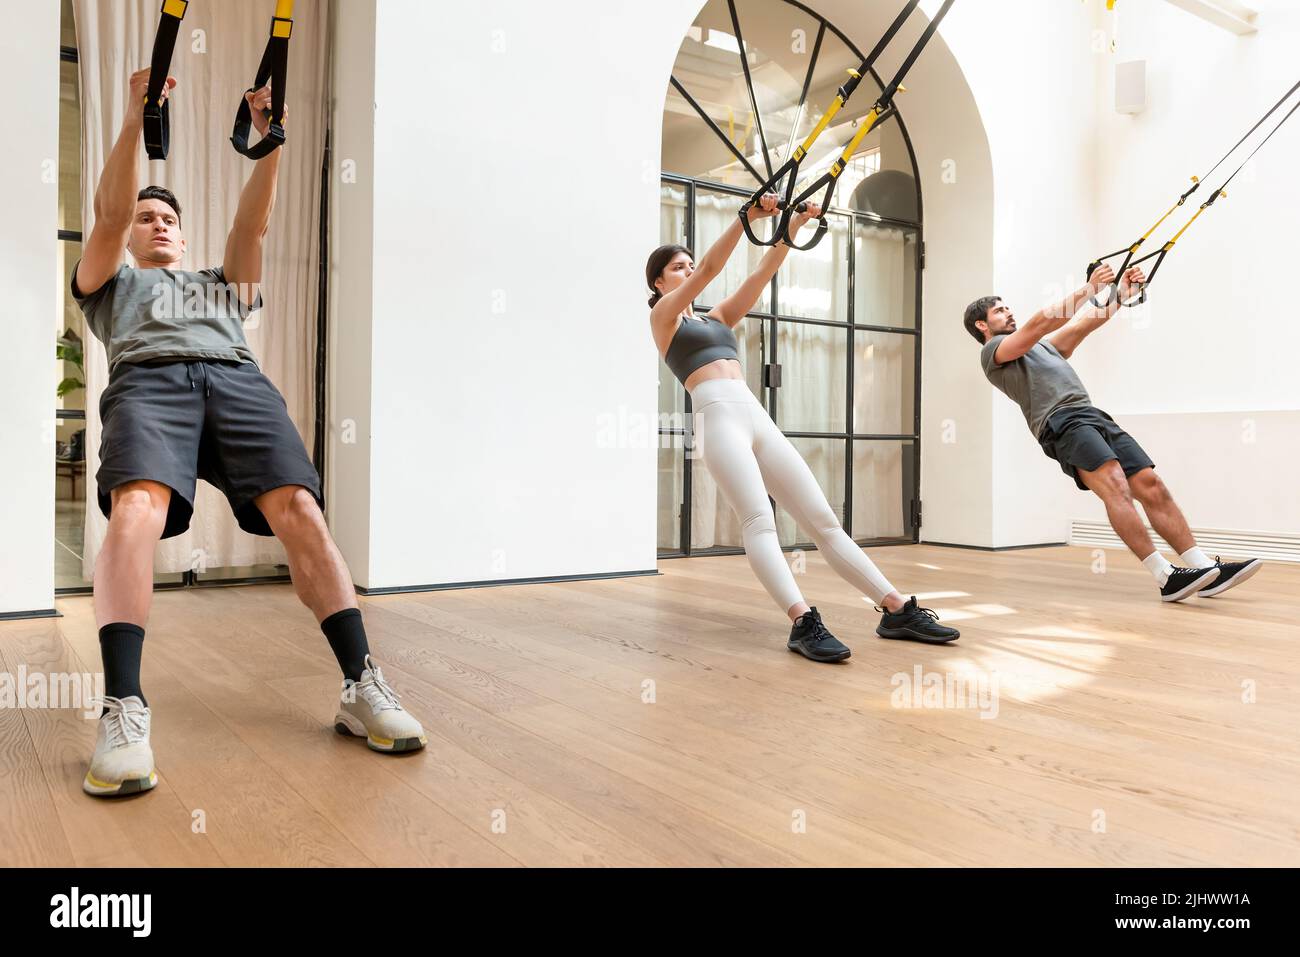 Cuerpo completo de personas fuertes en ropa activa haciendo ejercicios de estiramiento con correas TRX durante el entrenamiento funcional en gimnasio ligero moderno Foto de stock